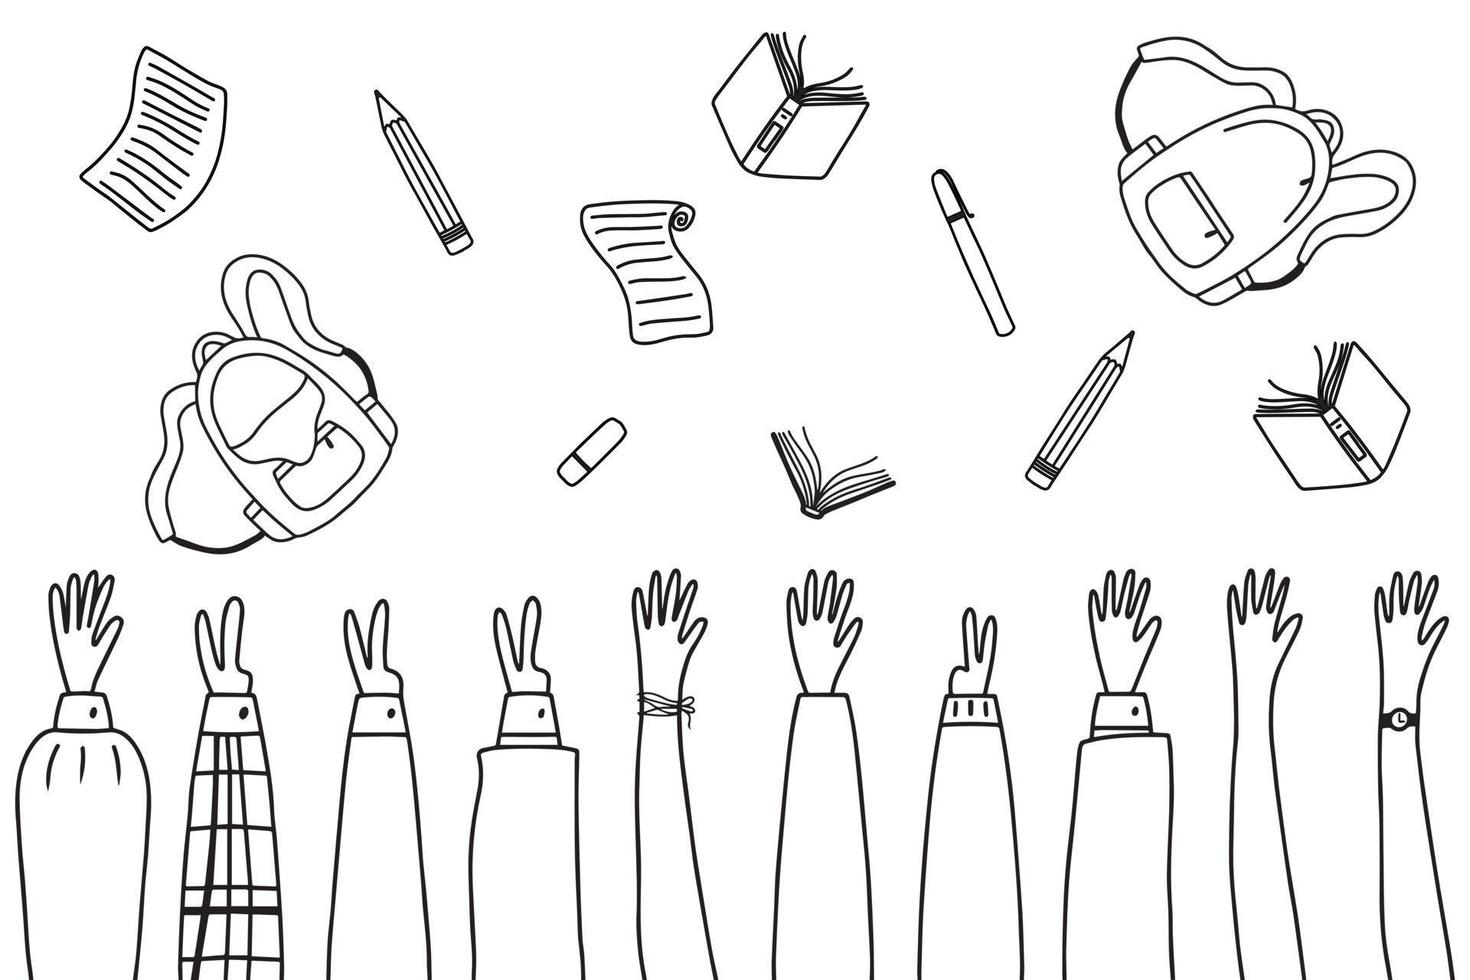 utbildning koncept. slut på skolan. skolbarn kastar skolföremål i luften. doodle stil. vektor illustration.